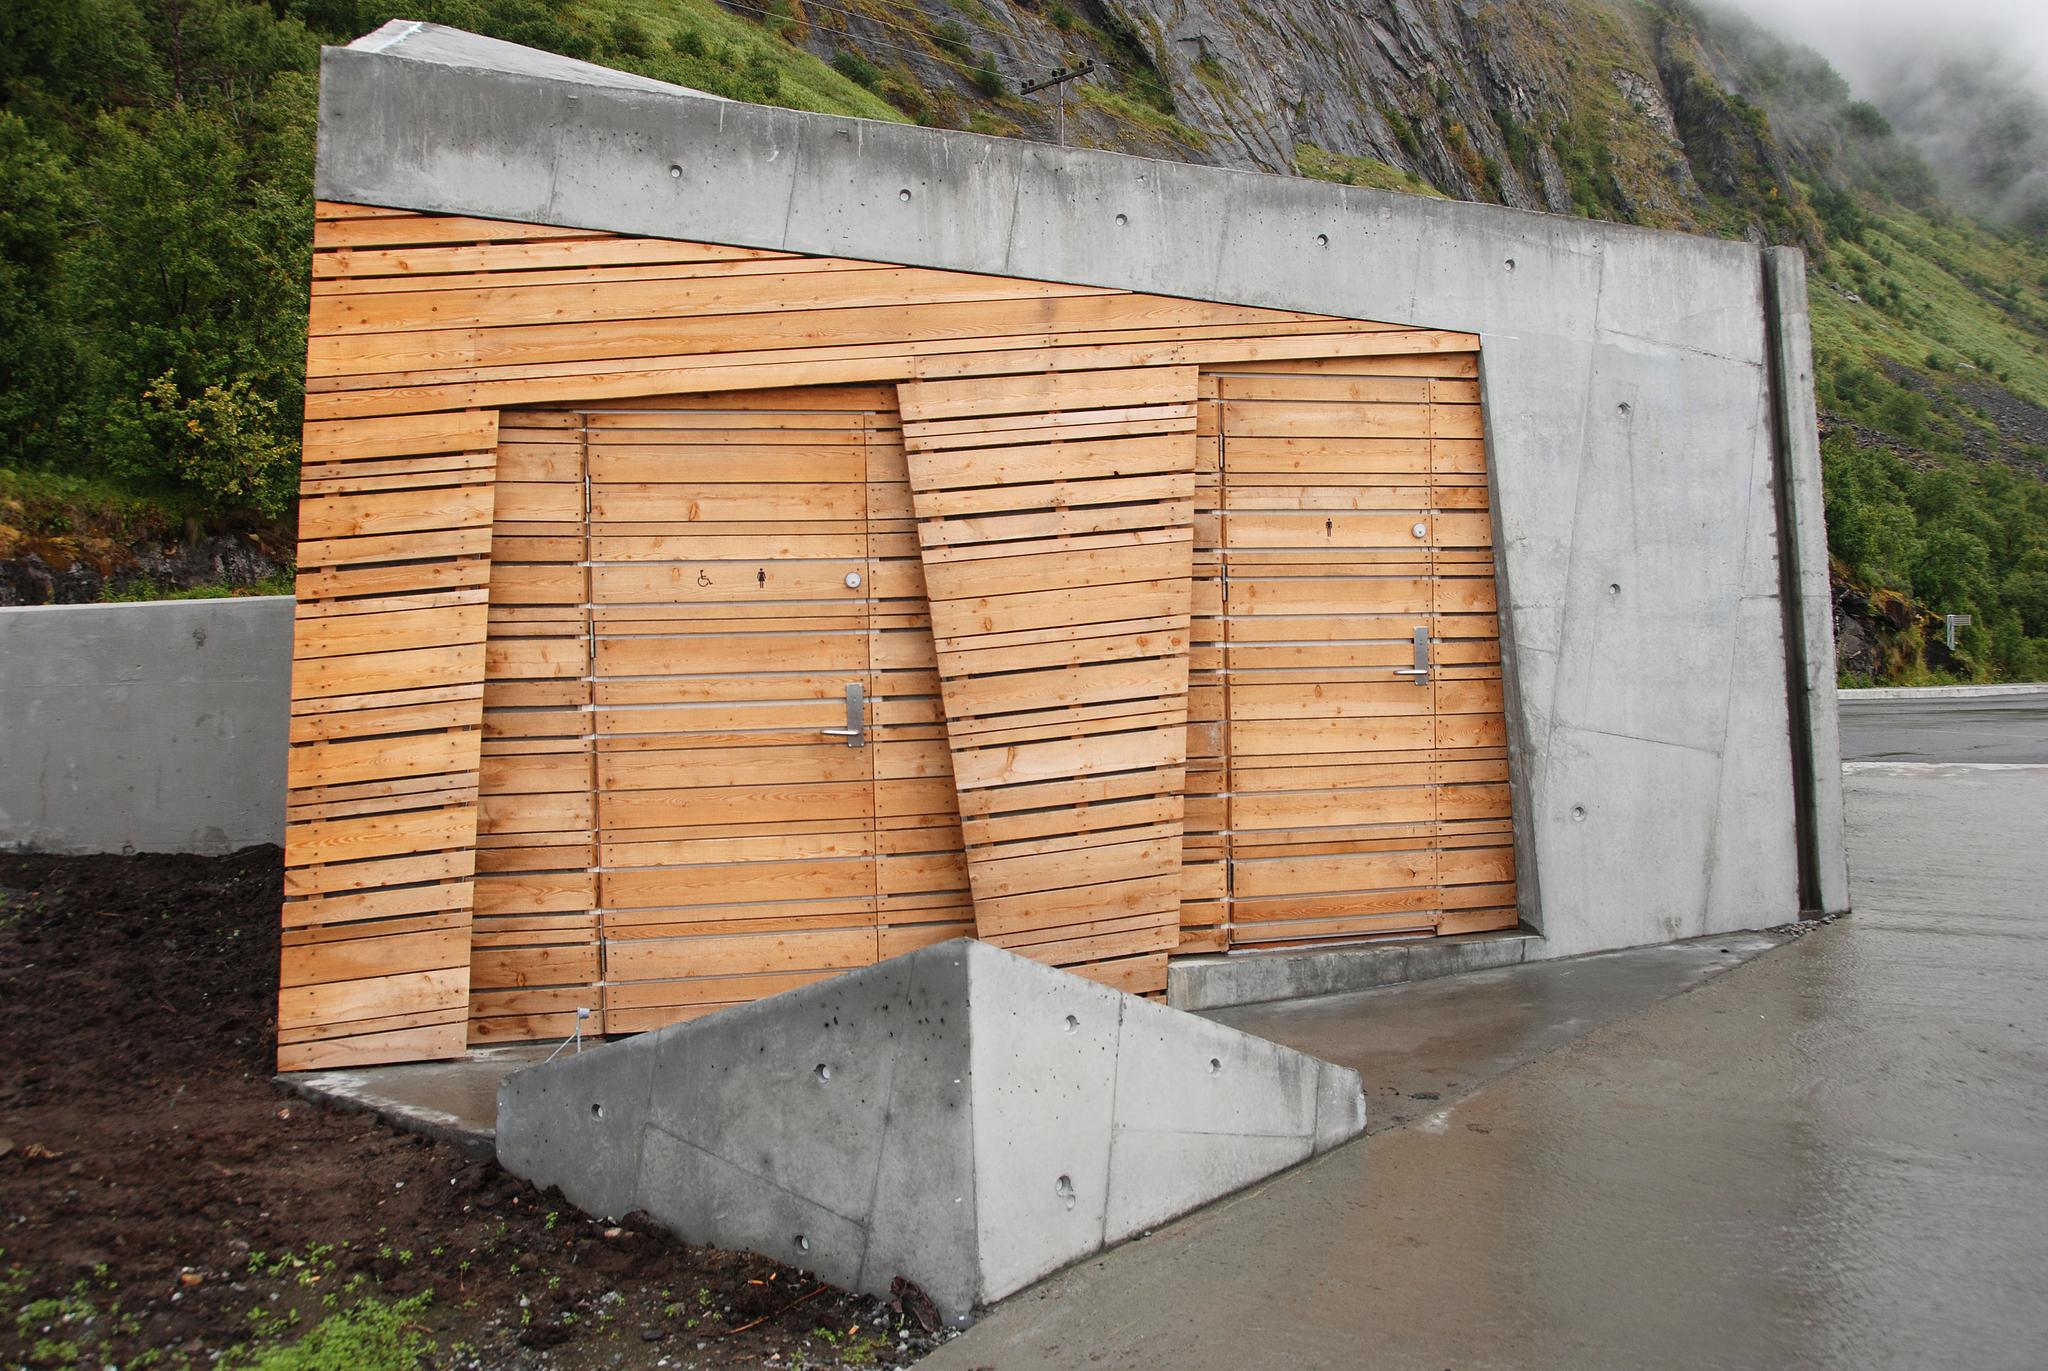 Mellom Steinfjorden og Ersfjorden på Senja i Troms og Finnmark, ligger Tungeneset rasteplass. En gangbane i sibirsk lerk leder ut mot svabergene med utsikt mot Okshornan. Arkitekt: Code arkitektur AS.